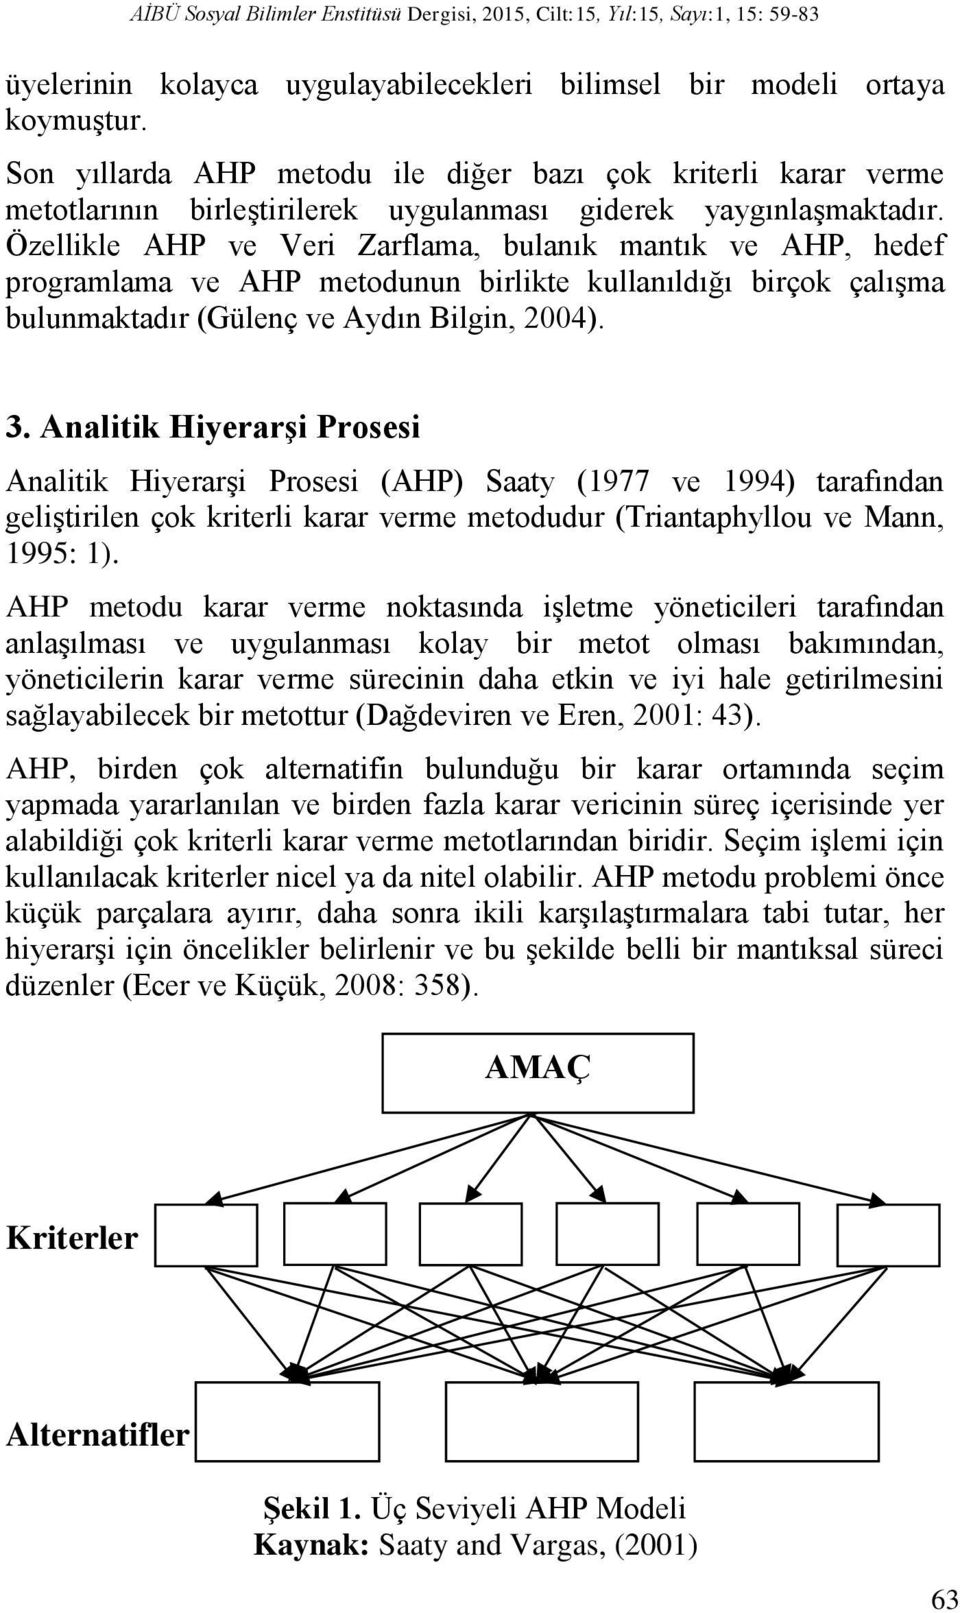 Özellikle AHP ve Veri Zarflama, bulanık mantık ve AHP, hedef programlama ve AHP metodunun birlikte kullanıldığı birçok çalışma bulunmaktadır (Gülenç ve Aydın Bilgin, 2004). 3.